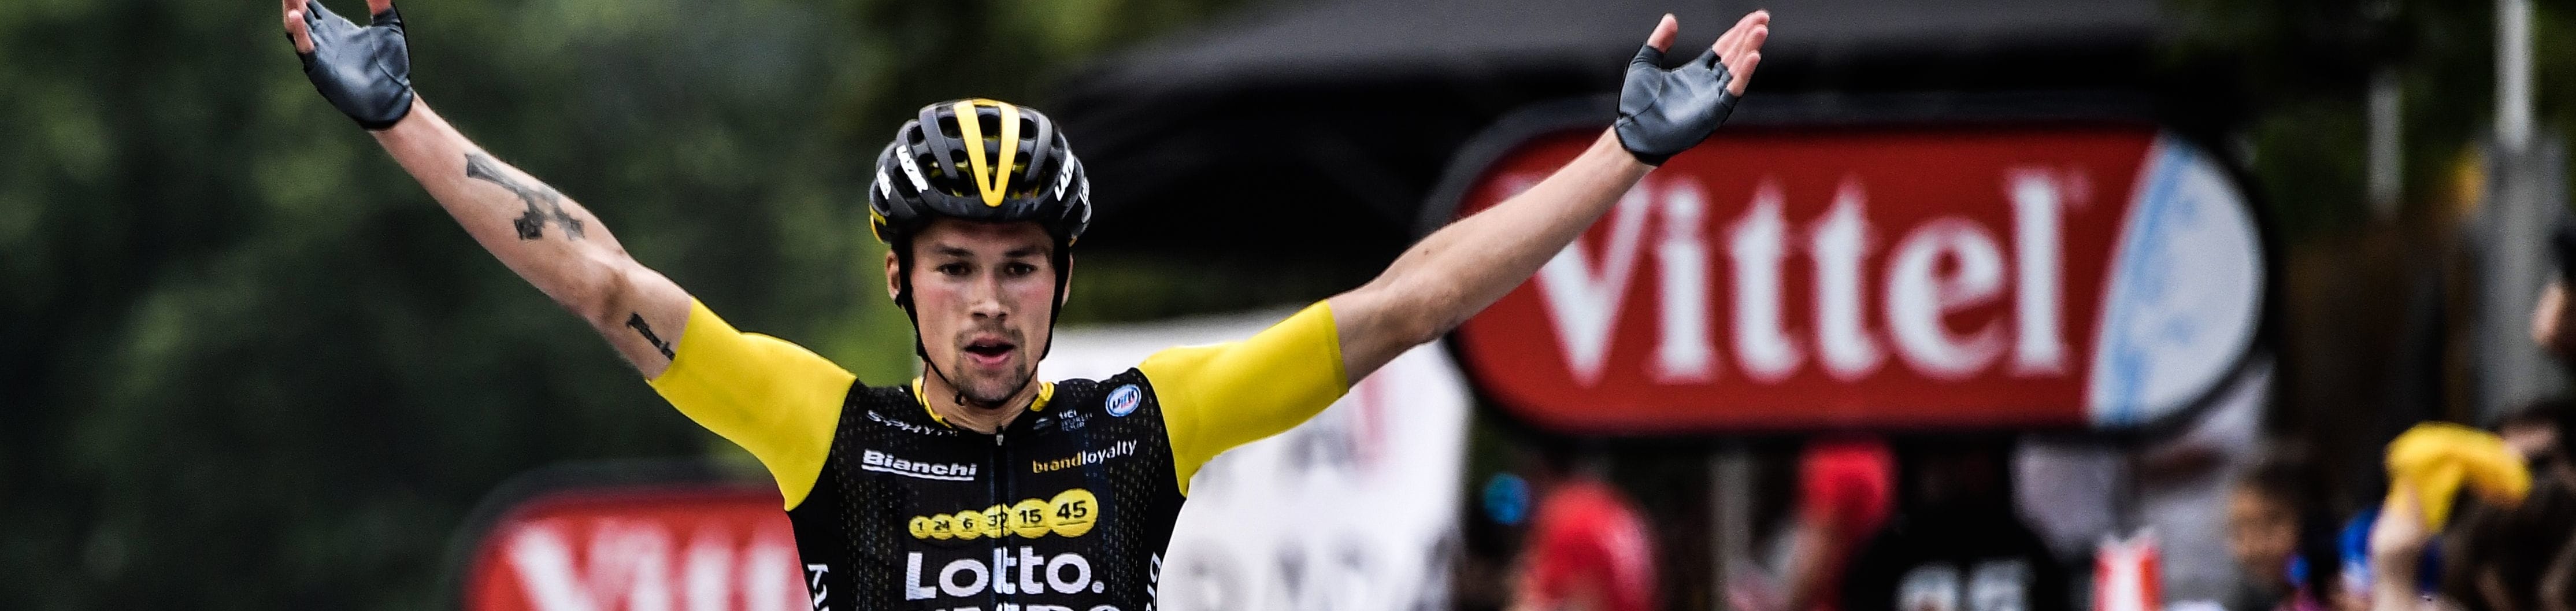 Vuelta 2019, tappa 5: primo arrivo in salita, Roglic o gioia colombiana?